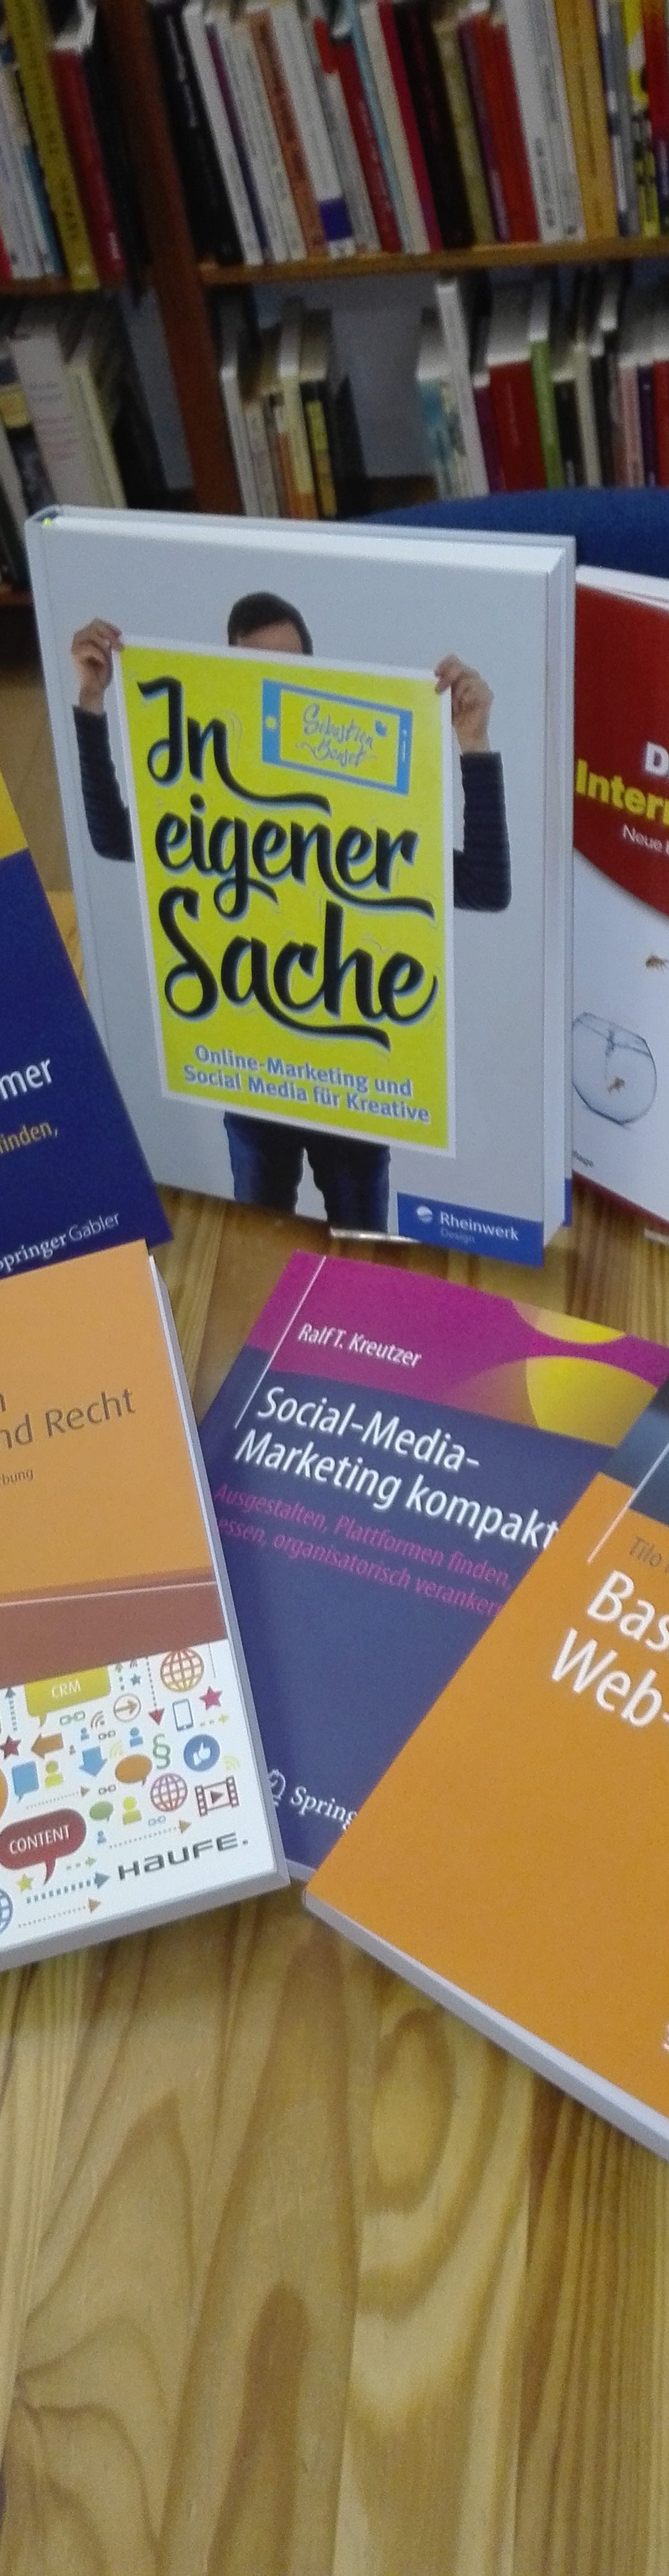 Neue Literatur im belladonna Archiv: Online & Social Media Marketing